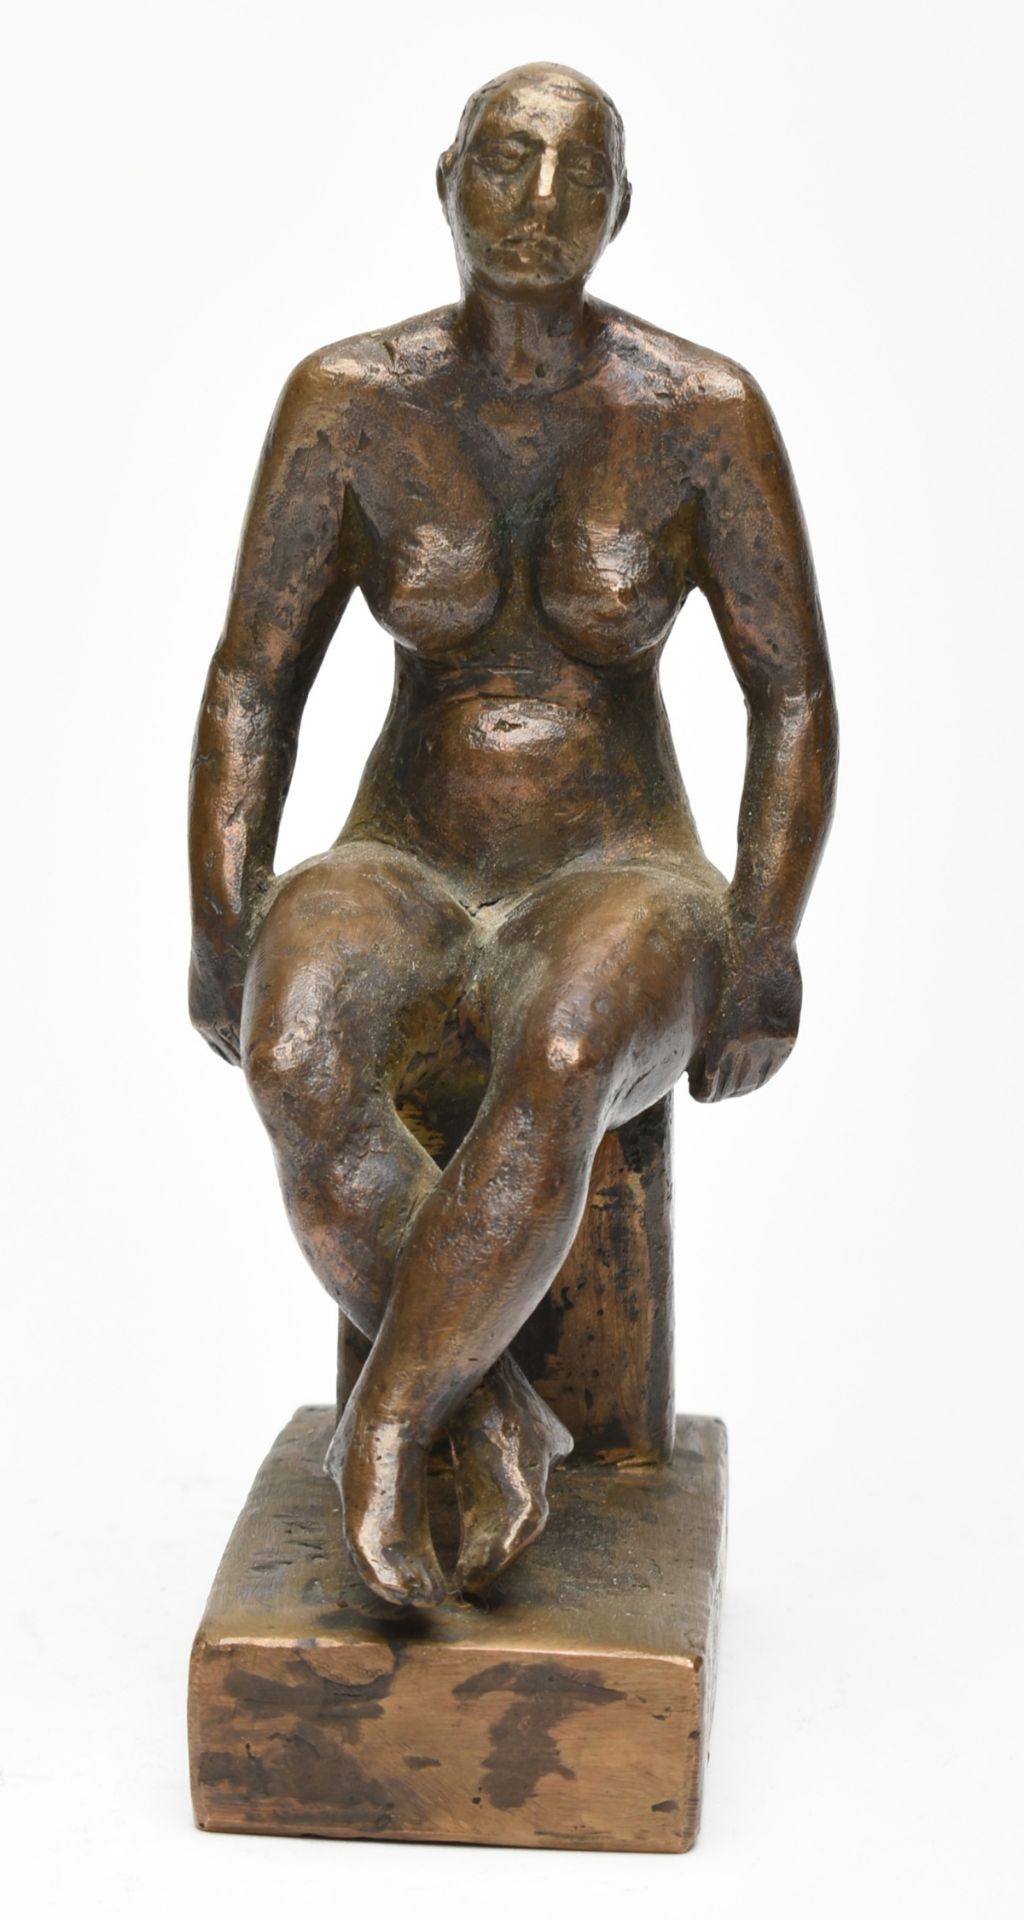 Sitzende Bronze, bräunlich patiniert, weiblicher Akt mit gekreuzten Beinen sitzend, Sockel rs. - Bild 3 aus 6